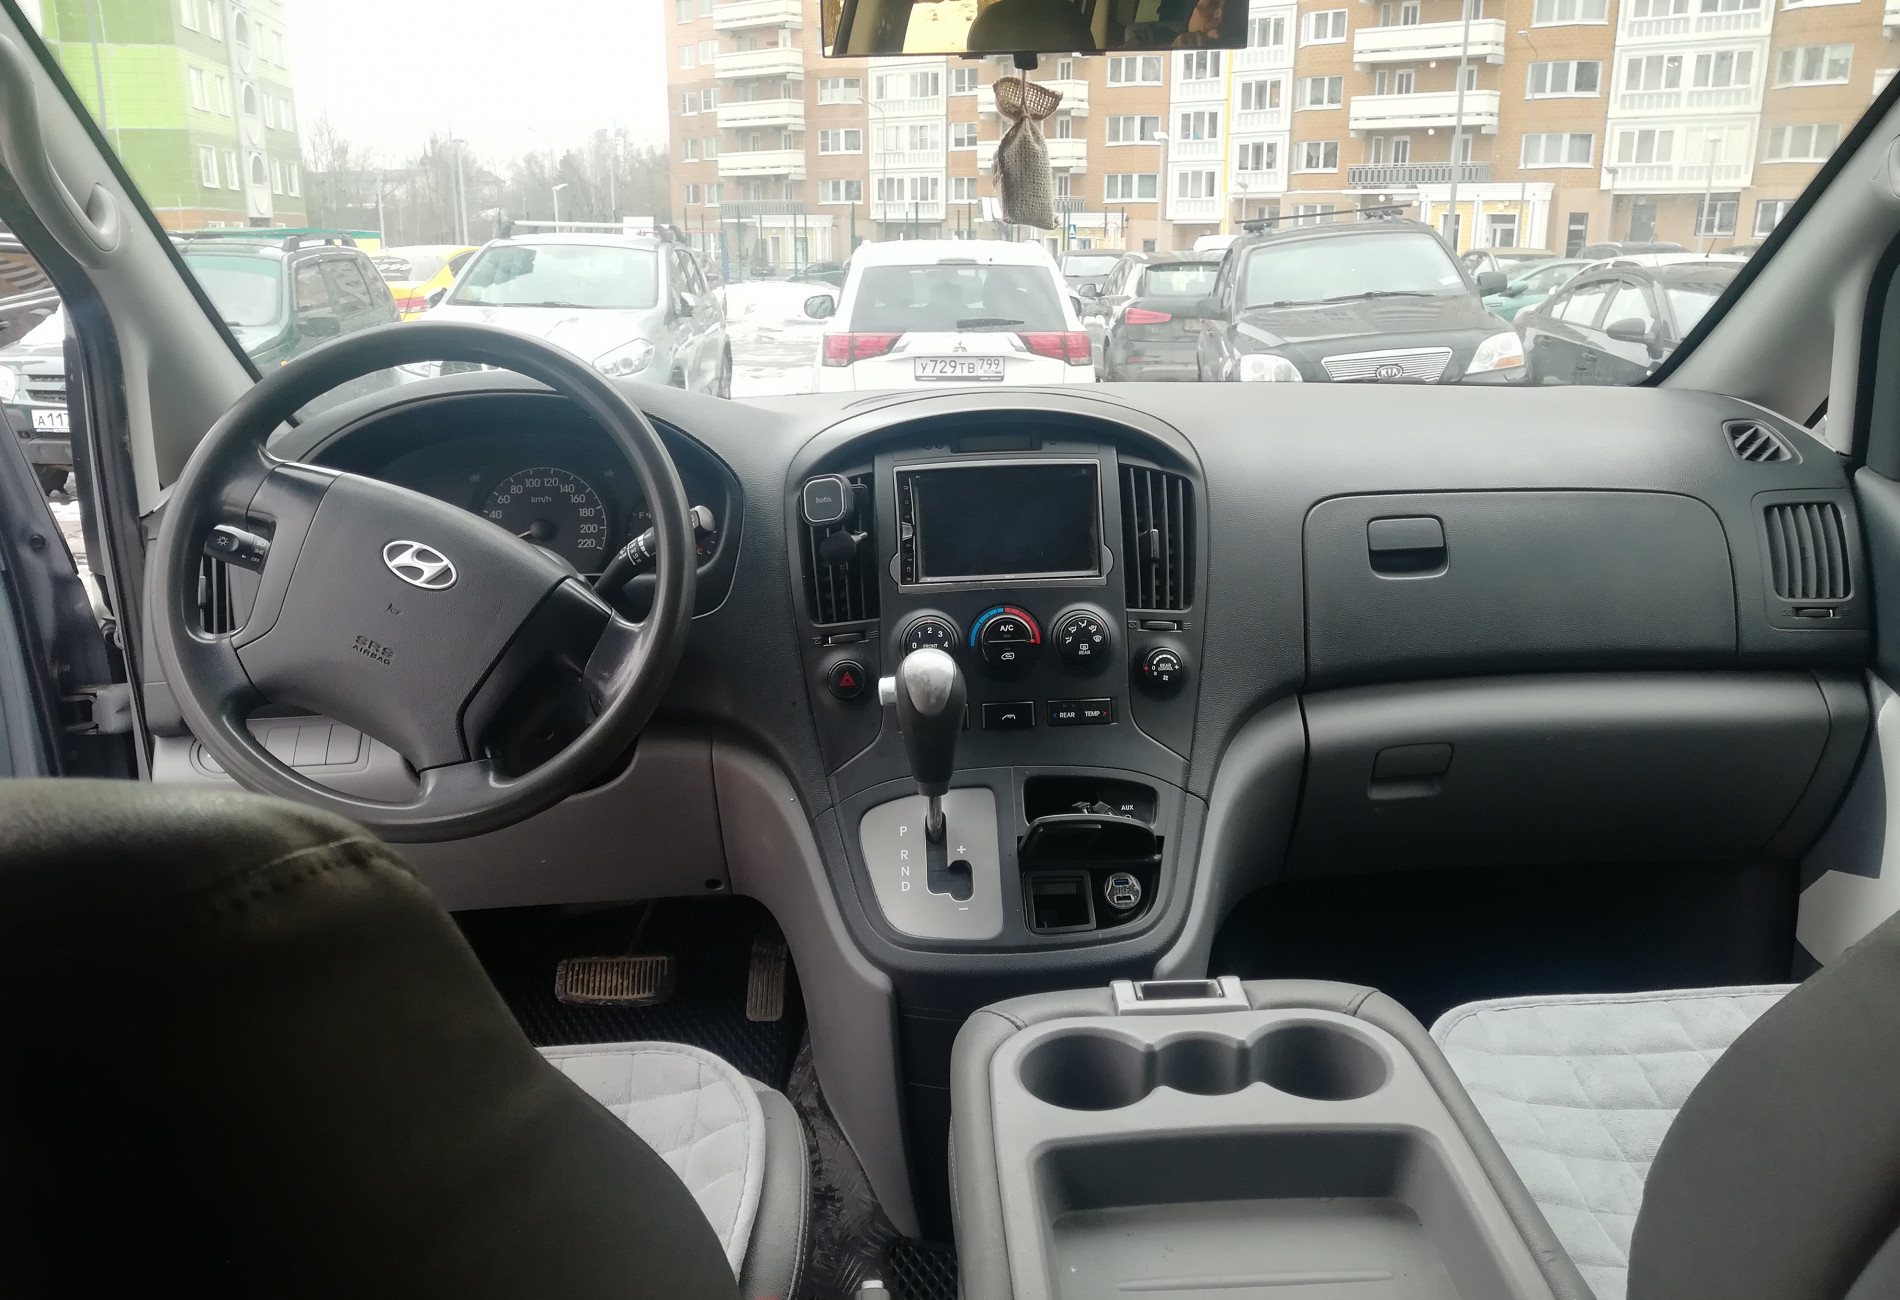 Аренда hyundai h1 2010 года в городе Москва Ховрино от 3999 руб./сутки, задний привод, двигатель: дизель, объем 2.5 литров, ОСАГО (Мультидрайв), без водителя, недорого, вид 12 - RentRide